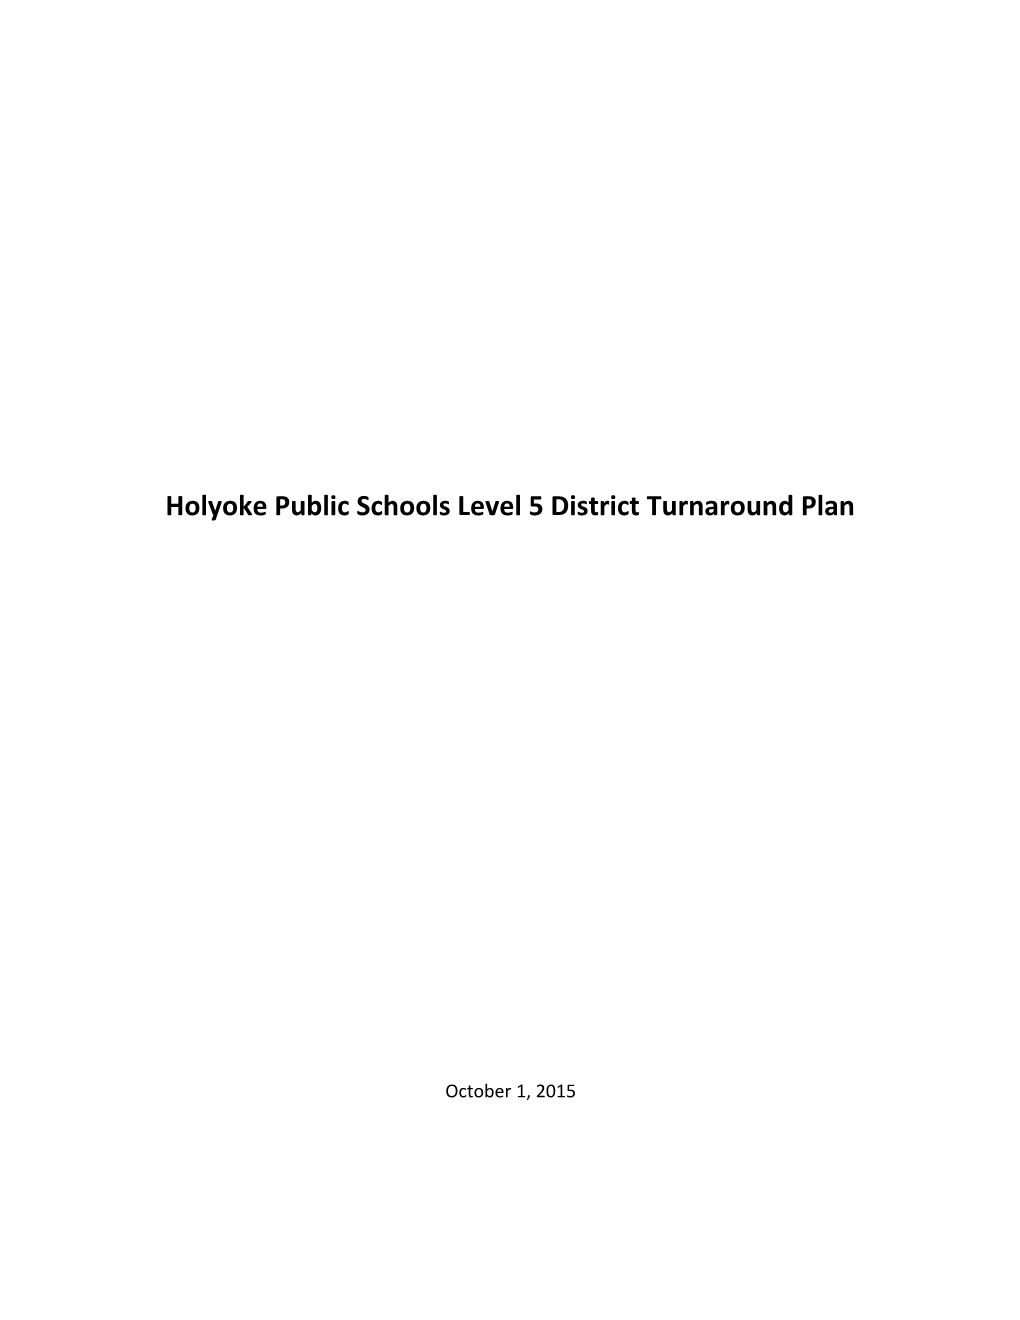 Holyoke Level 5 District Turnaround Plan